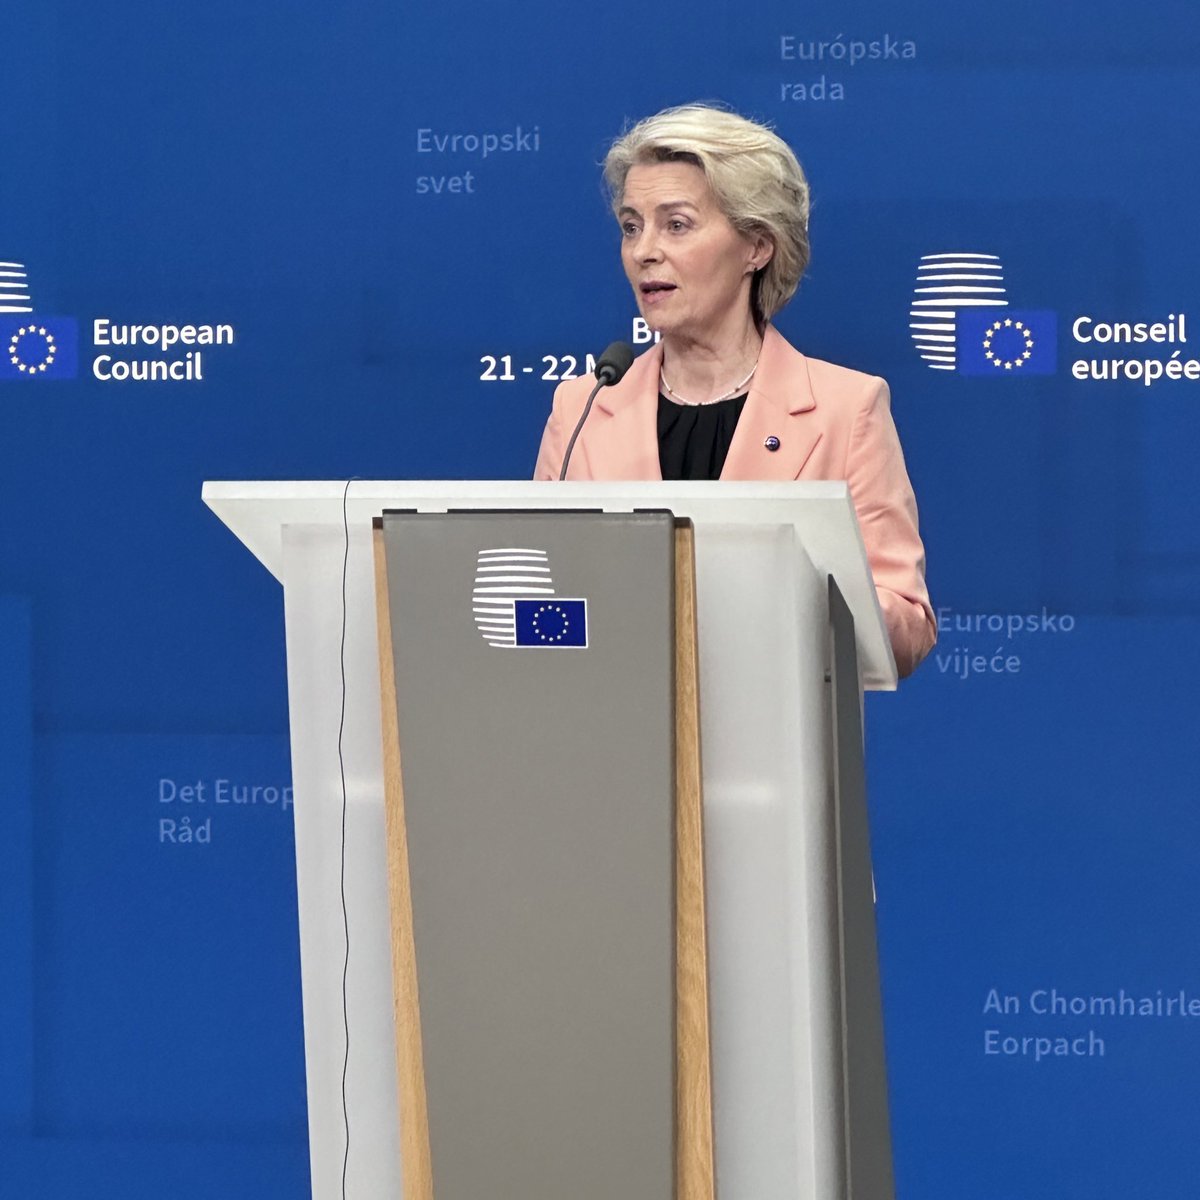 La presidenta de la Comissió Europea, Ursula von der Leyen, va dir que els primers mil milions de beneficis extraordinaris (al voltant de 3.000 milions d'euros) dels actius russos congelats es podrien alliberar tan aviat com l'1 de juliol. Els líders de la UE han acordat avançar en l'ús dels diners per donar suport a Ucraïna